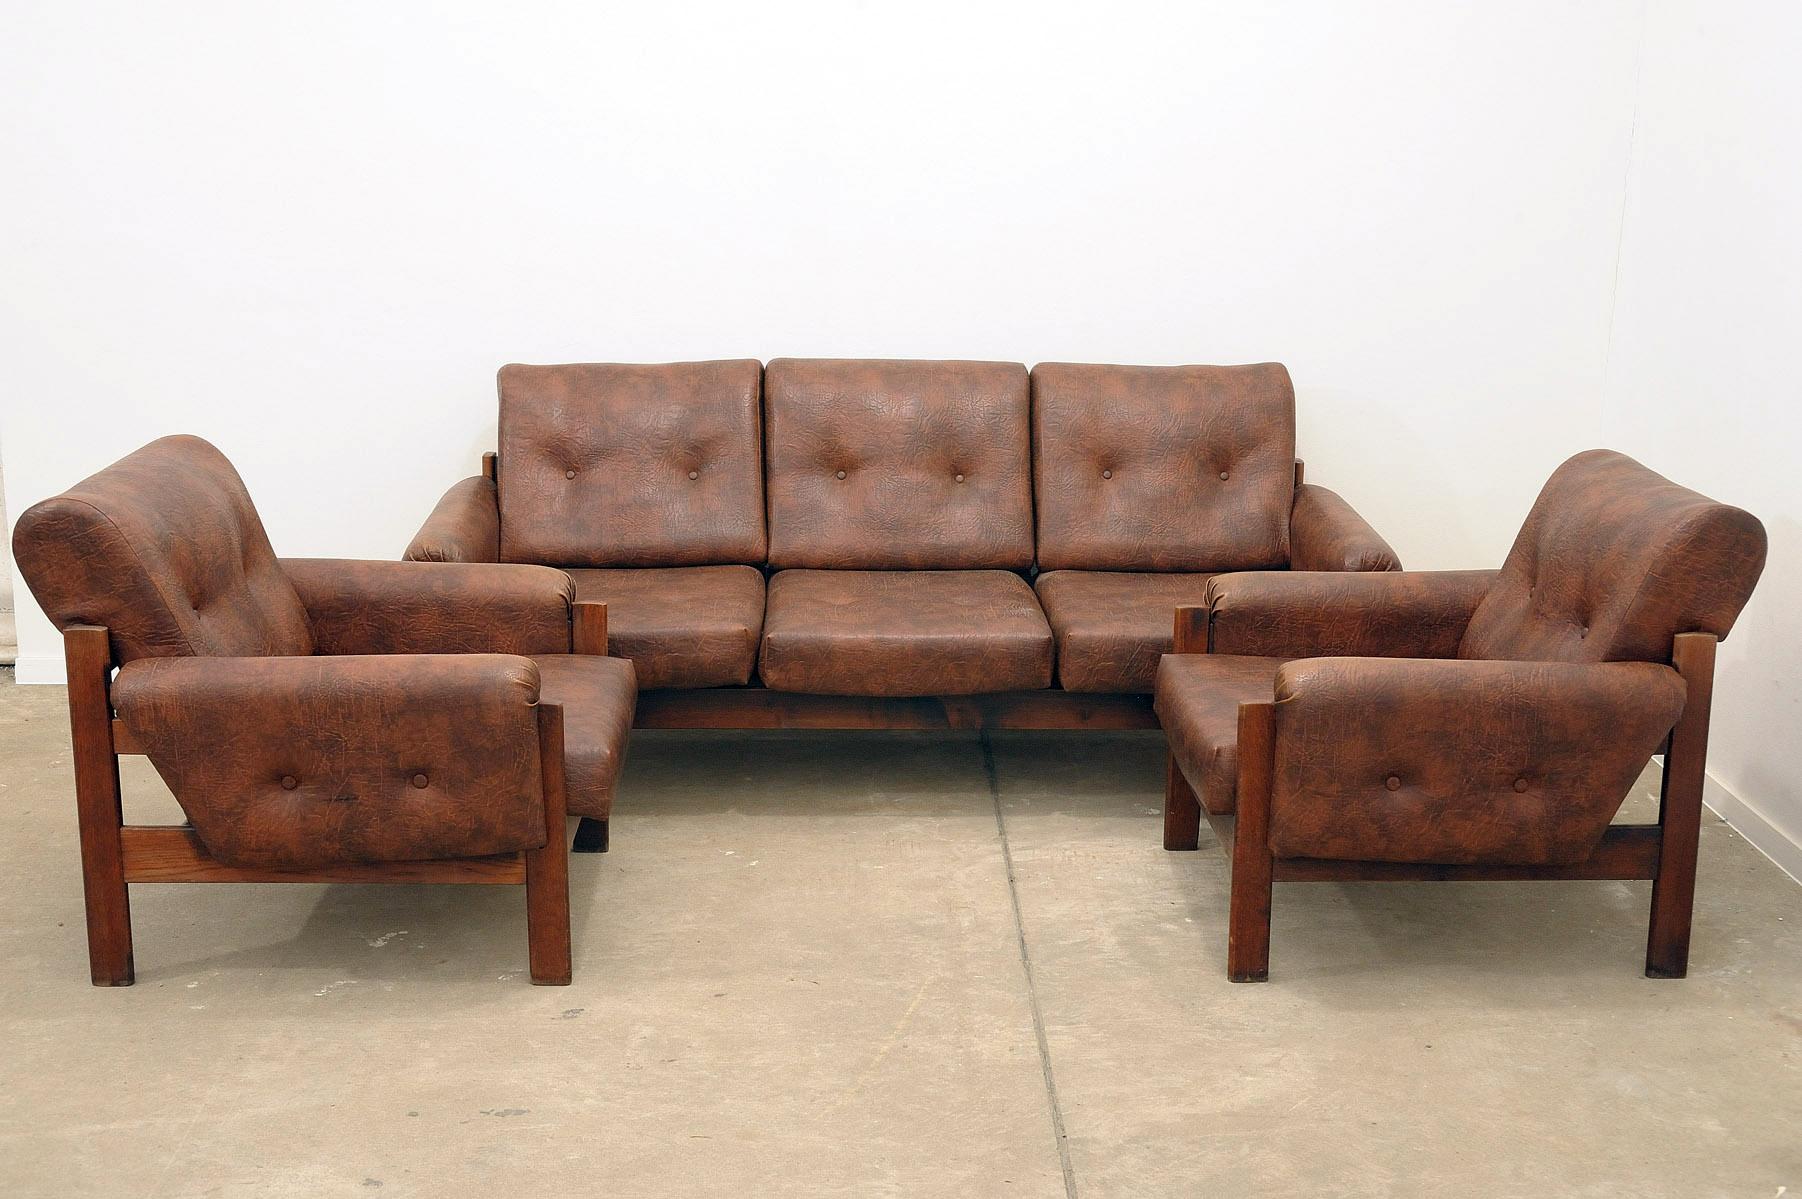 Cet ensemble de salon en similicuir est un exemple typique du design des meubles des années 1970/1980.
Il a été fabriqué en Tchécoslovaquie.
Le mobilier est en très bon état Vintage By, présentant de légers signes d'âge et d'utilisation.

Dimensions